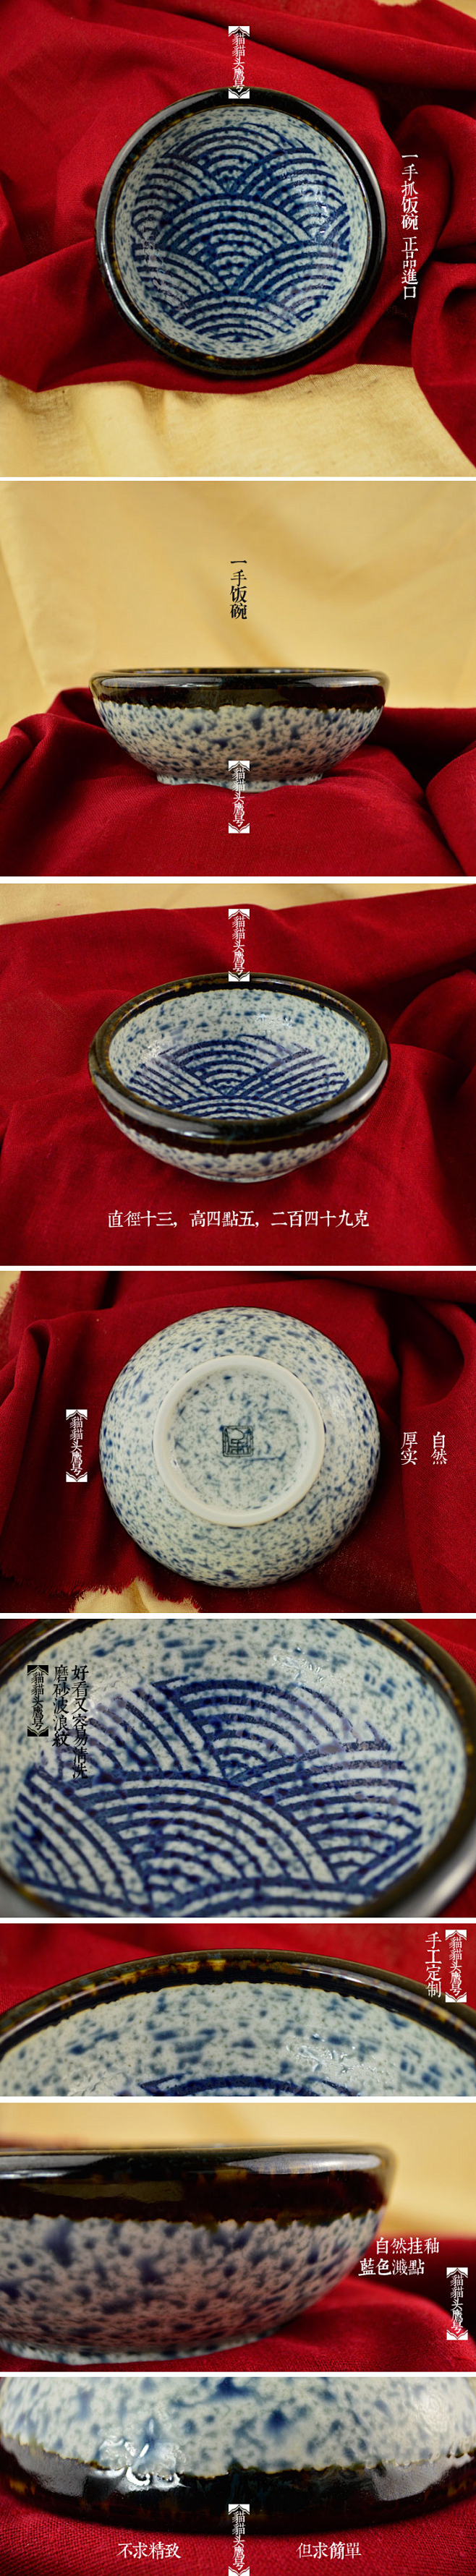 日本正品陶瓷器 手绘海波浪纹 日式 和风...